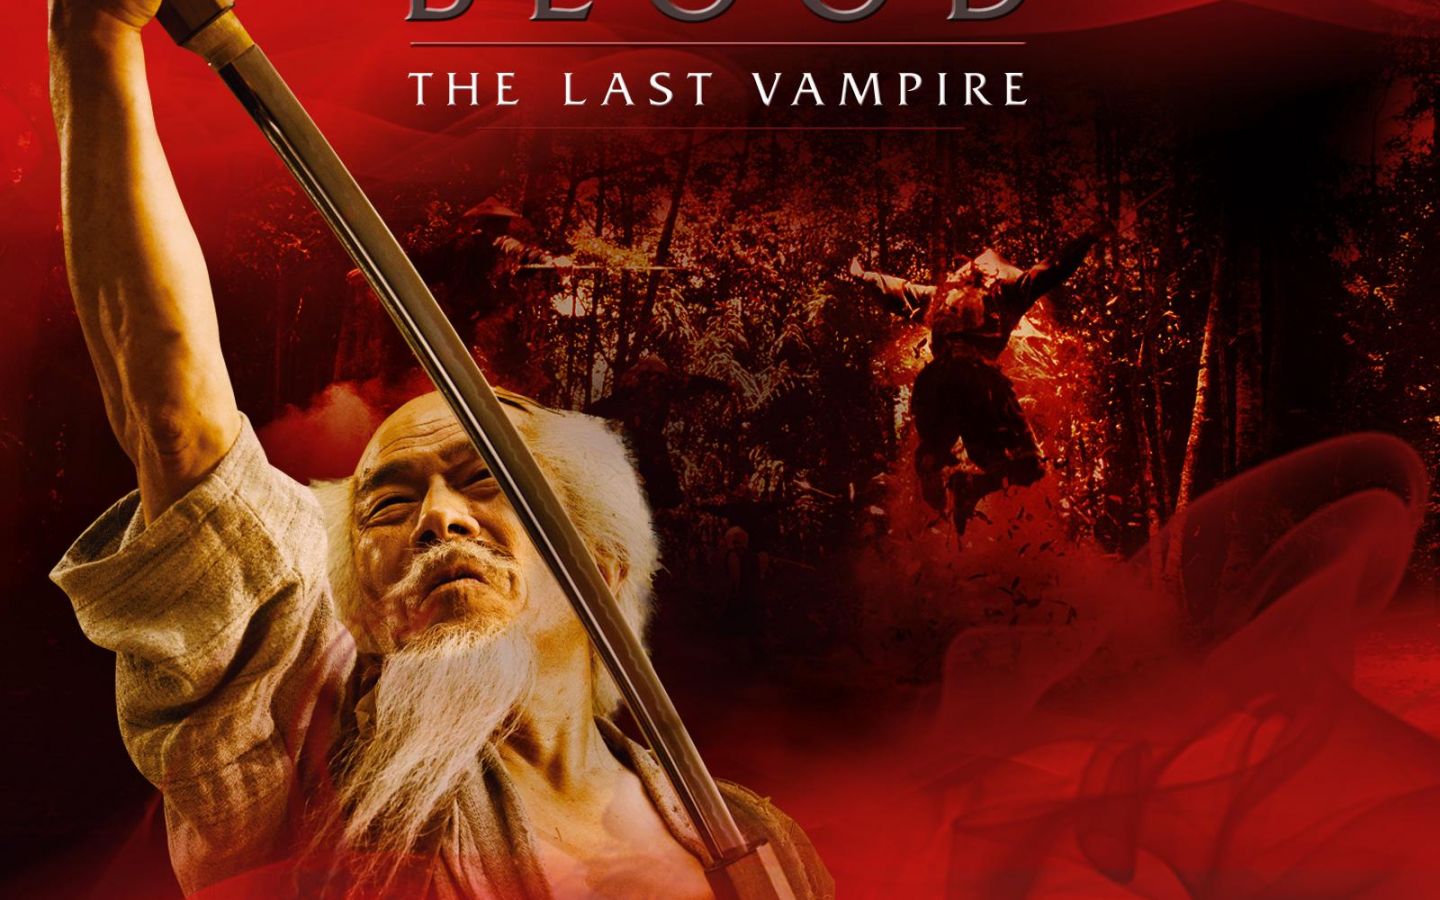 Фильм Последний вампир | Blood: The Last Vampire - лучшие обои для рабочего стола